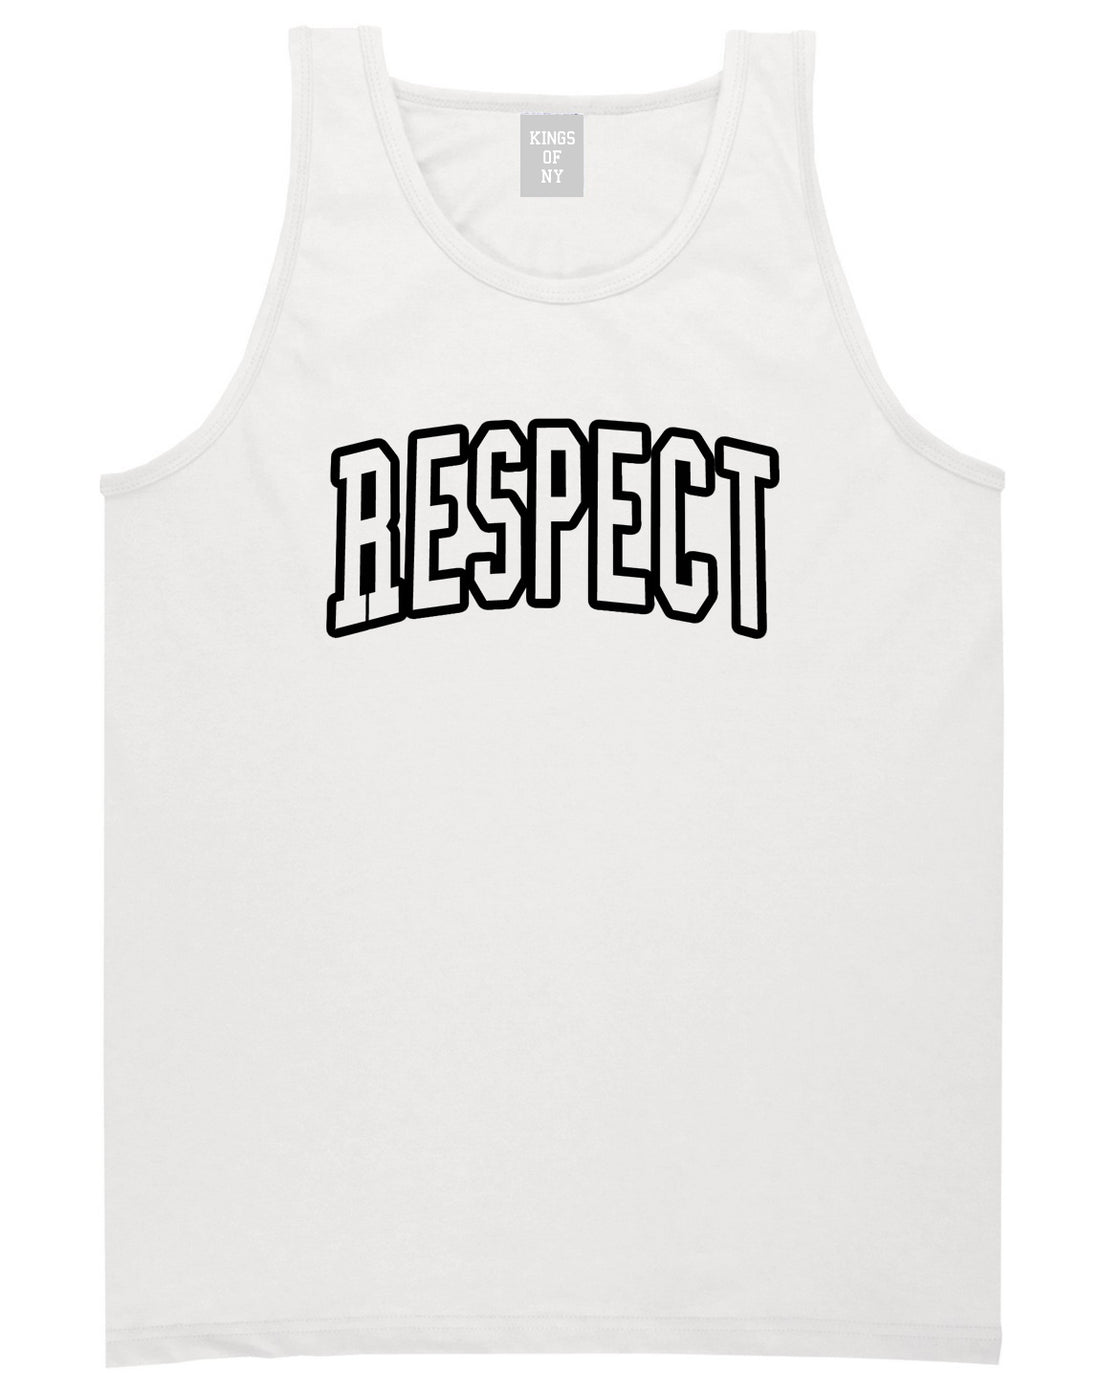 Respect Outline Mens Tank Top T-Shirt White